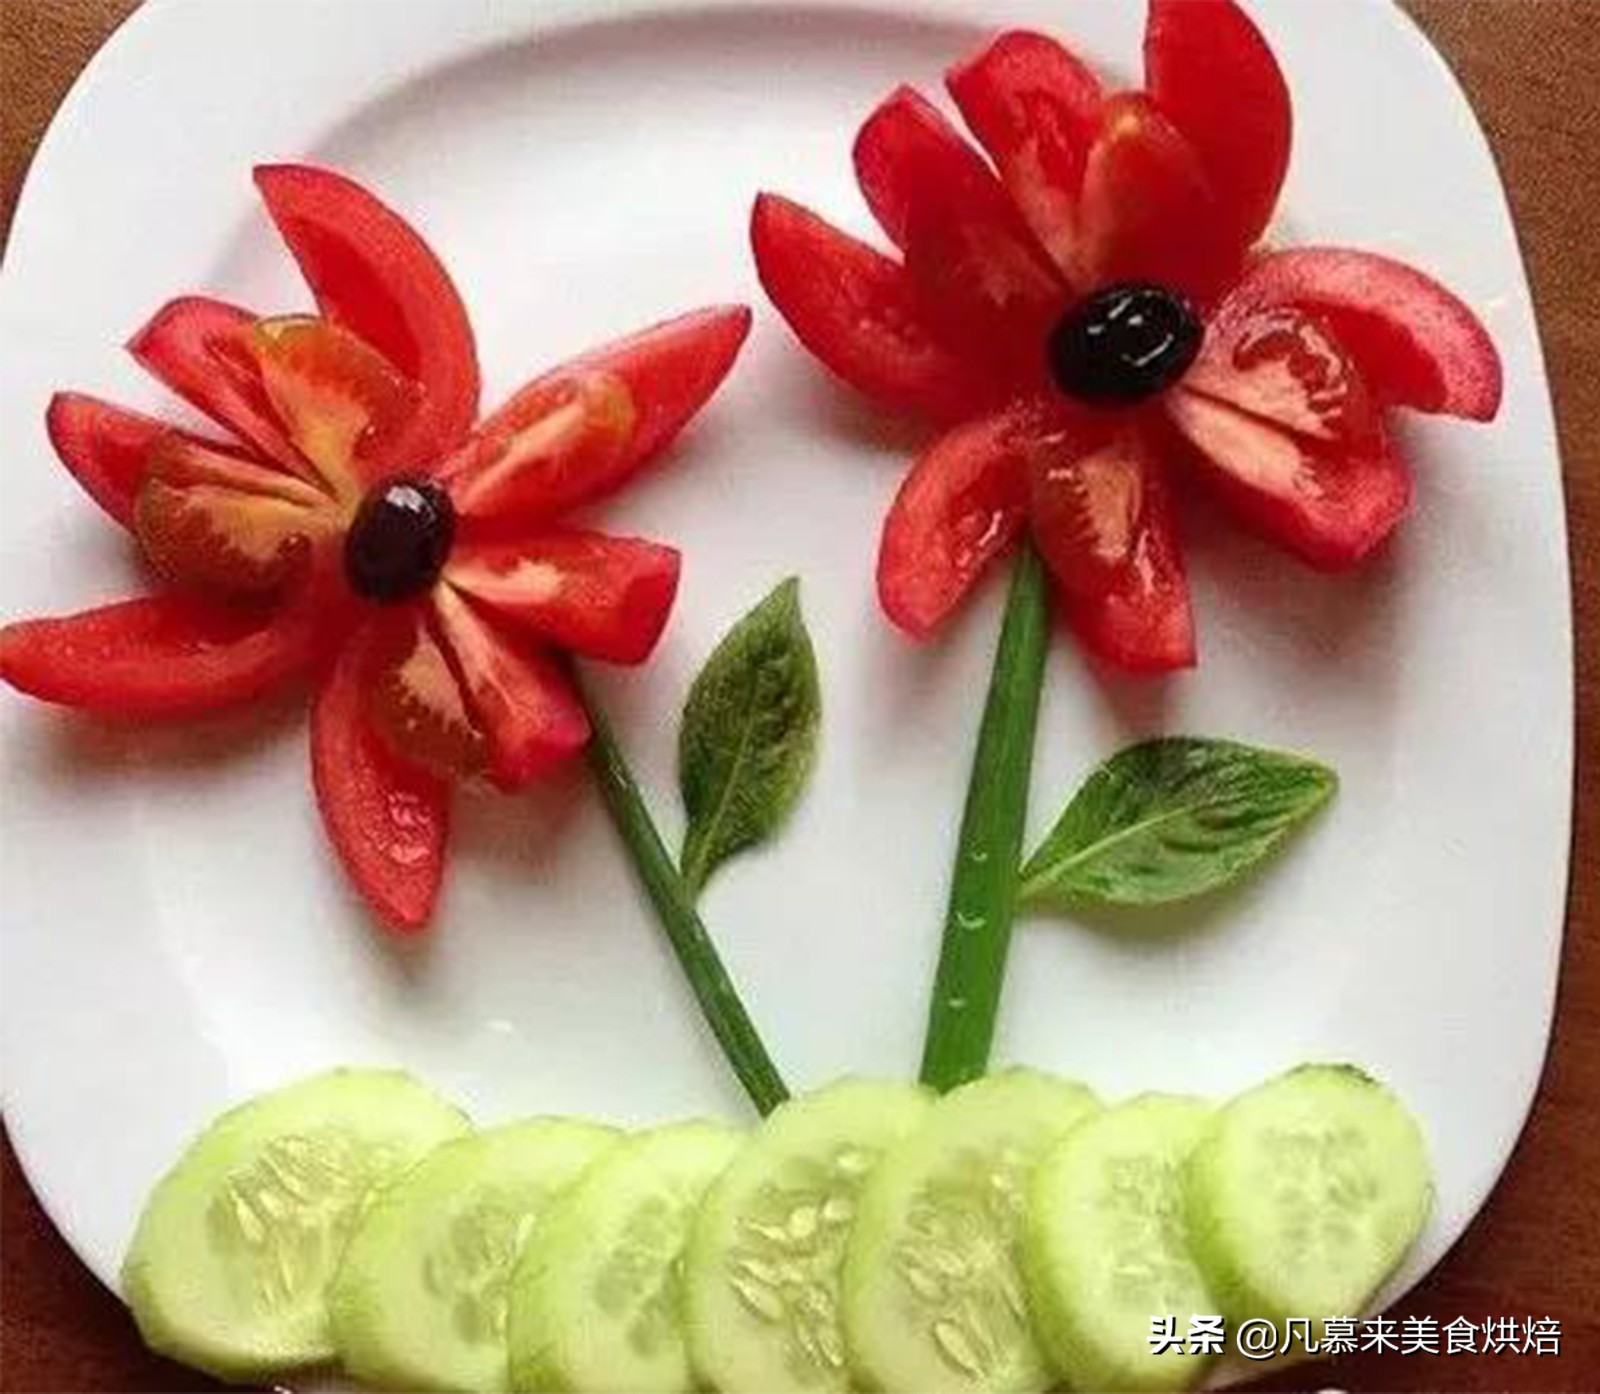 西瓜水果拼盘(5种常见水果拼盘的花样切法教程)